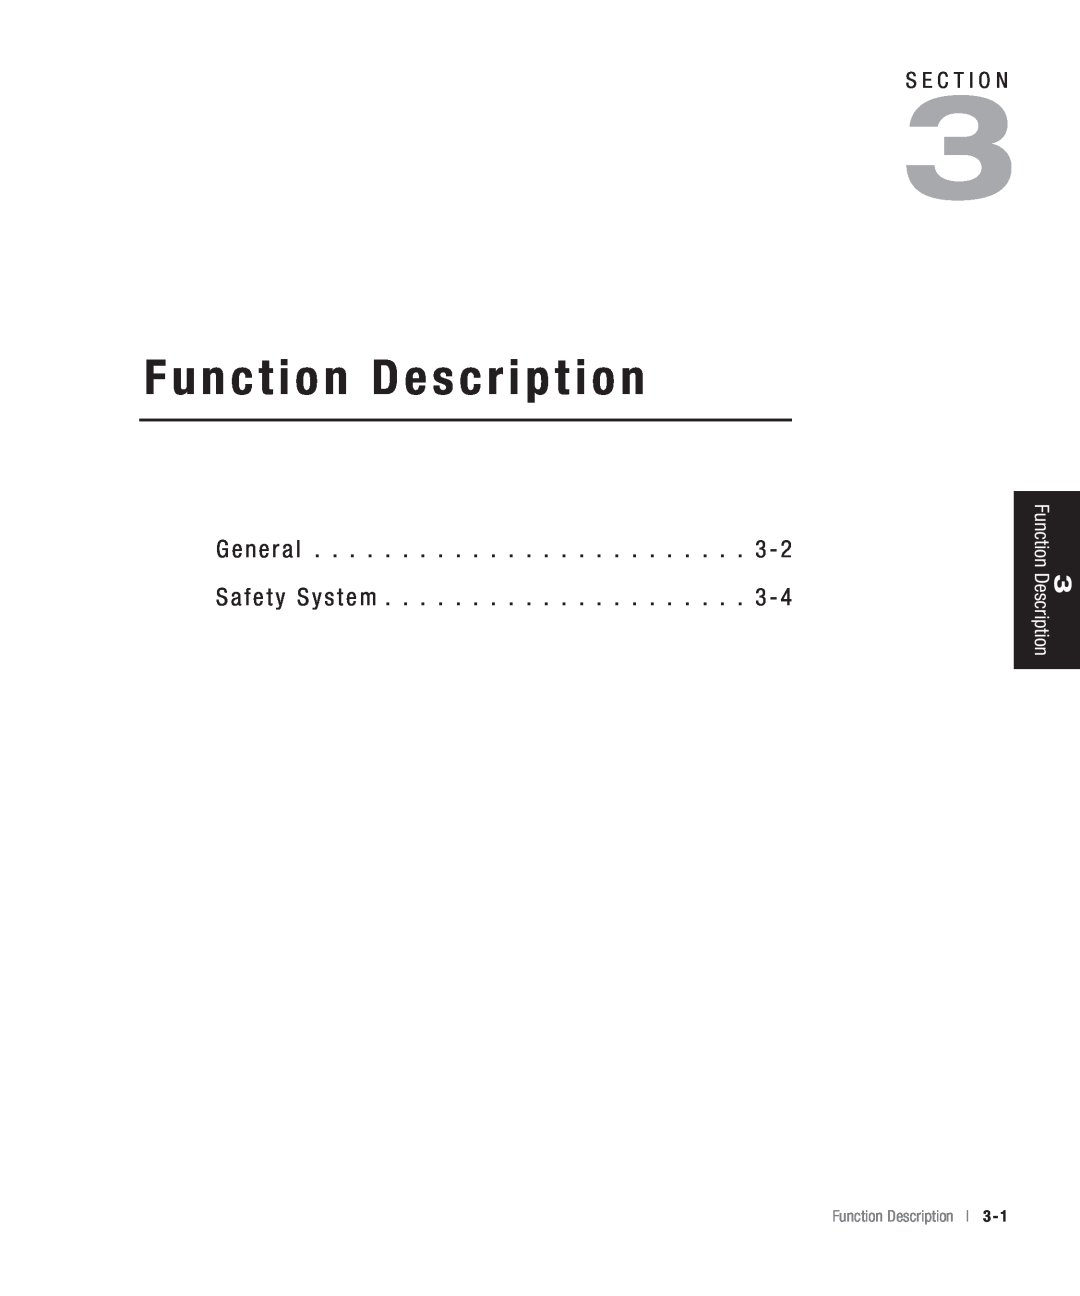 Conair CHS-810 manual G e n e r a l, S a f e t y S y s t e m, Function Description l 3 